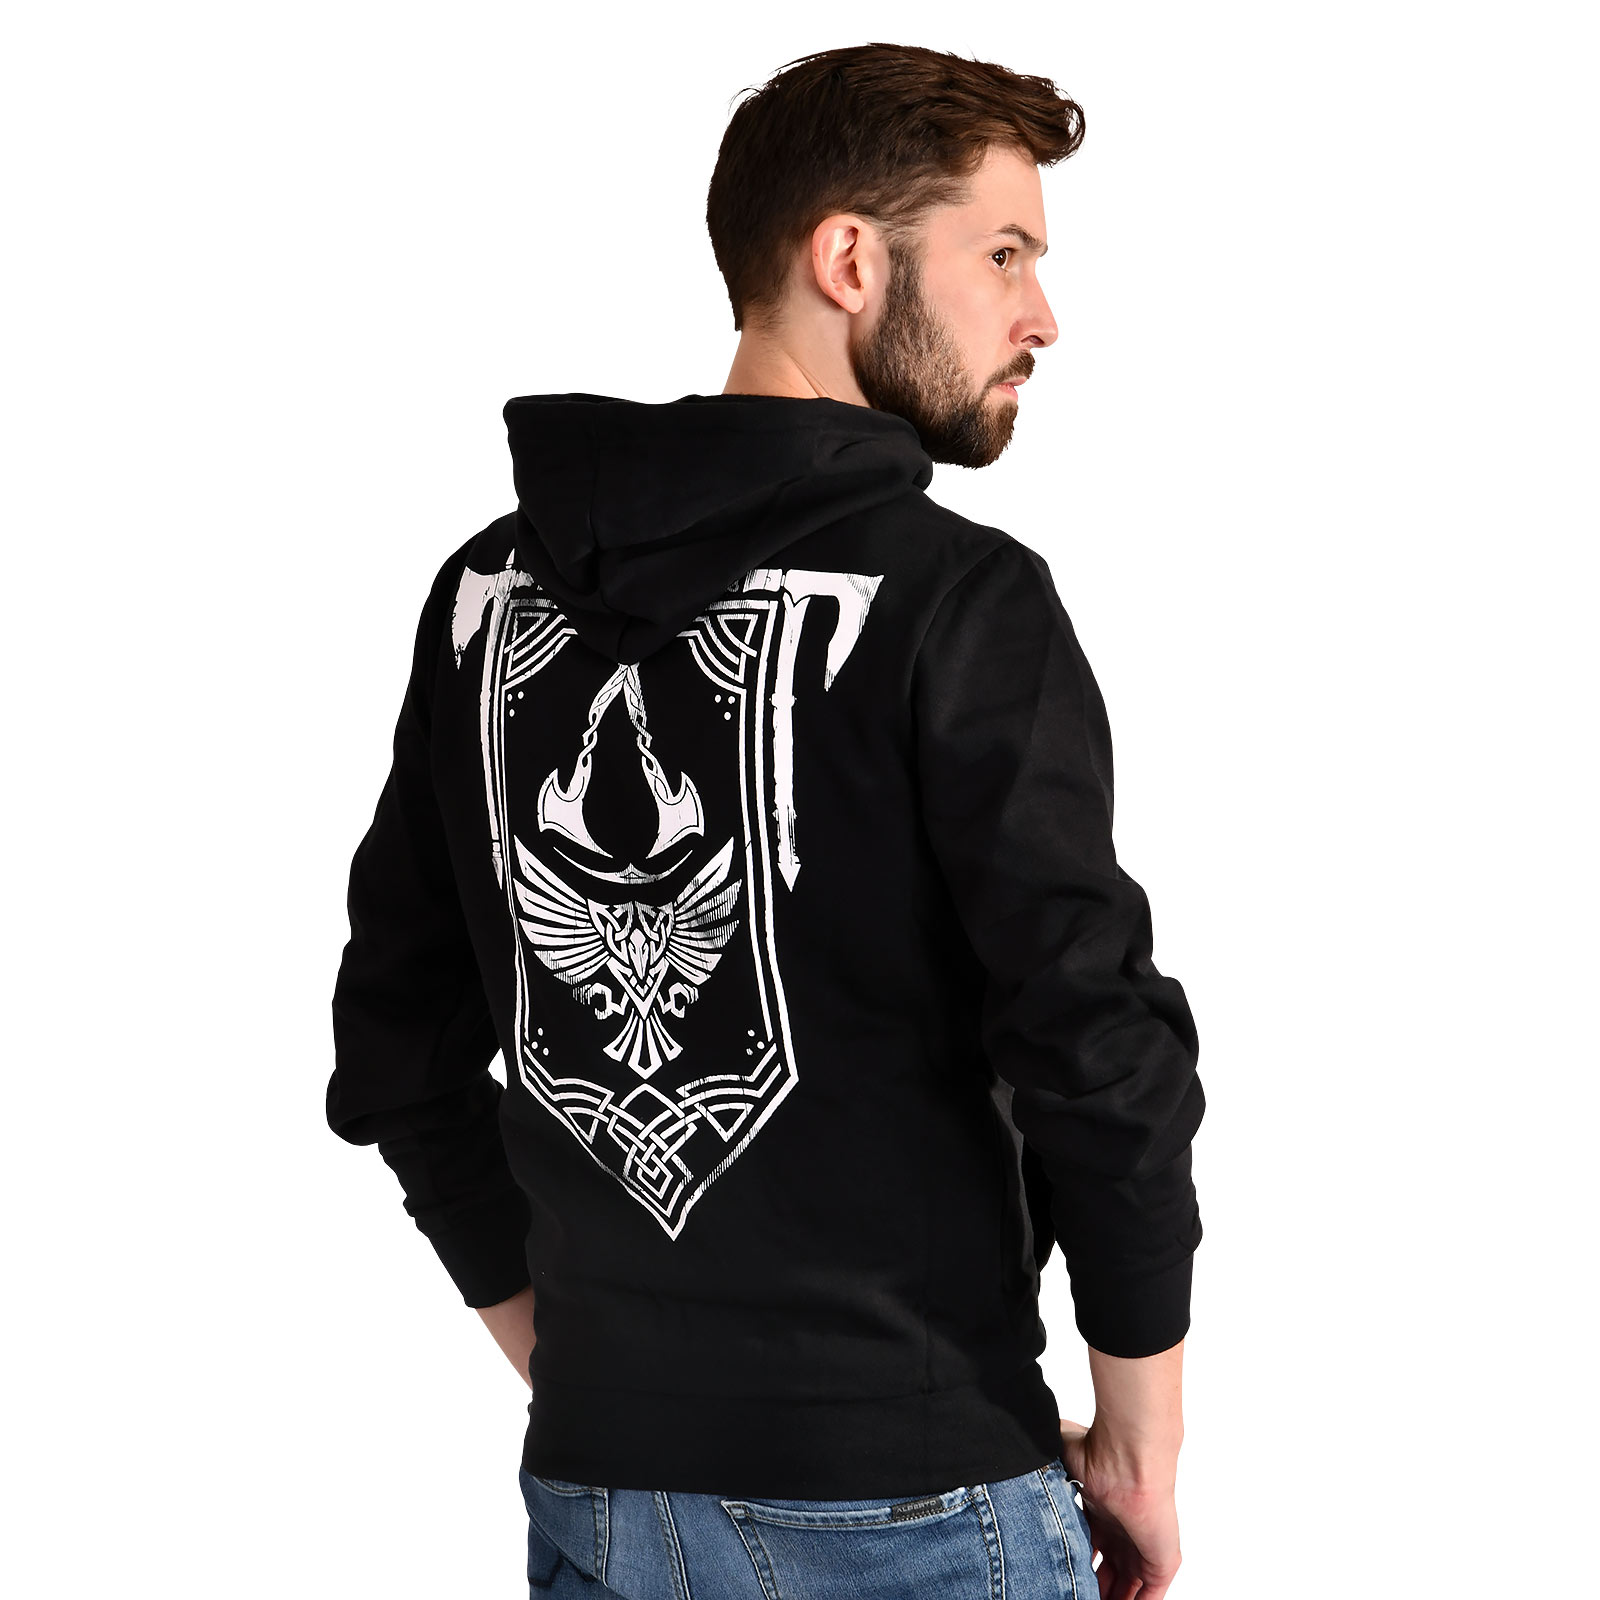 Assassin's Creed - Valhalla Crest Banner Kapuzenjacke schwarz